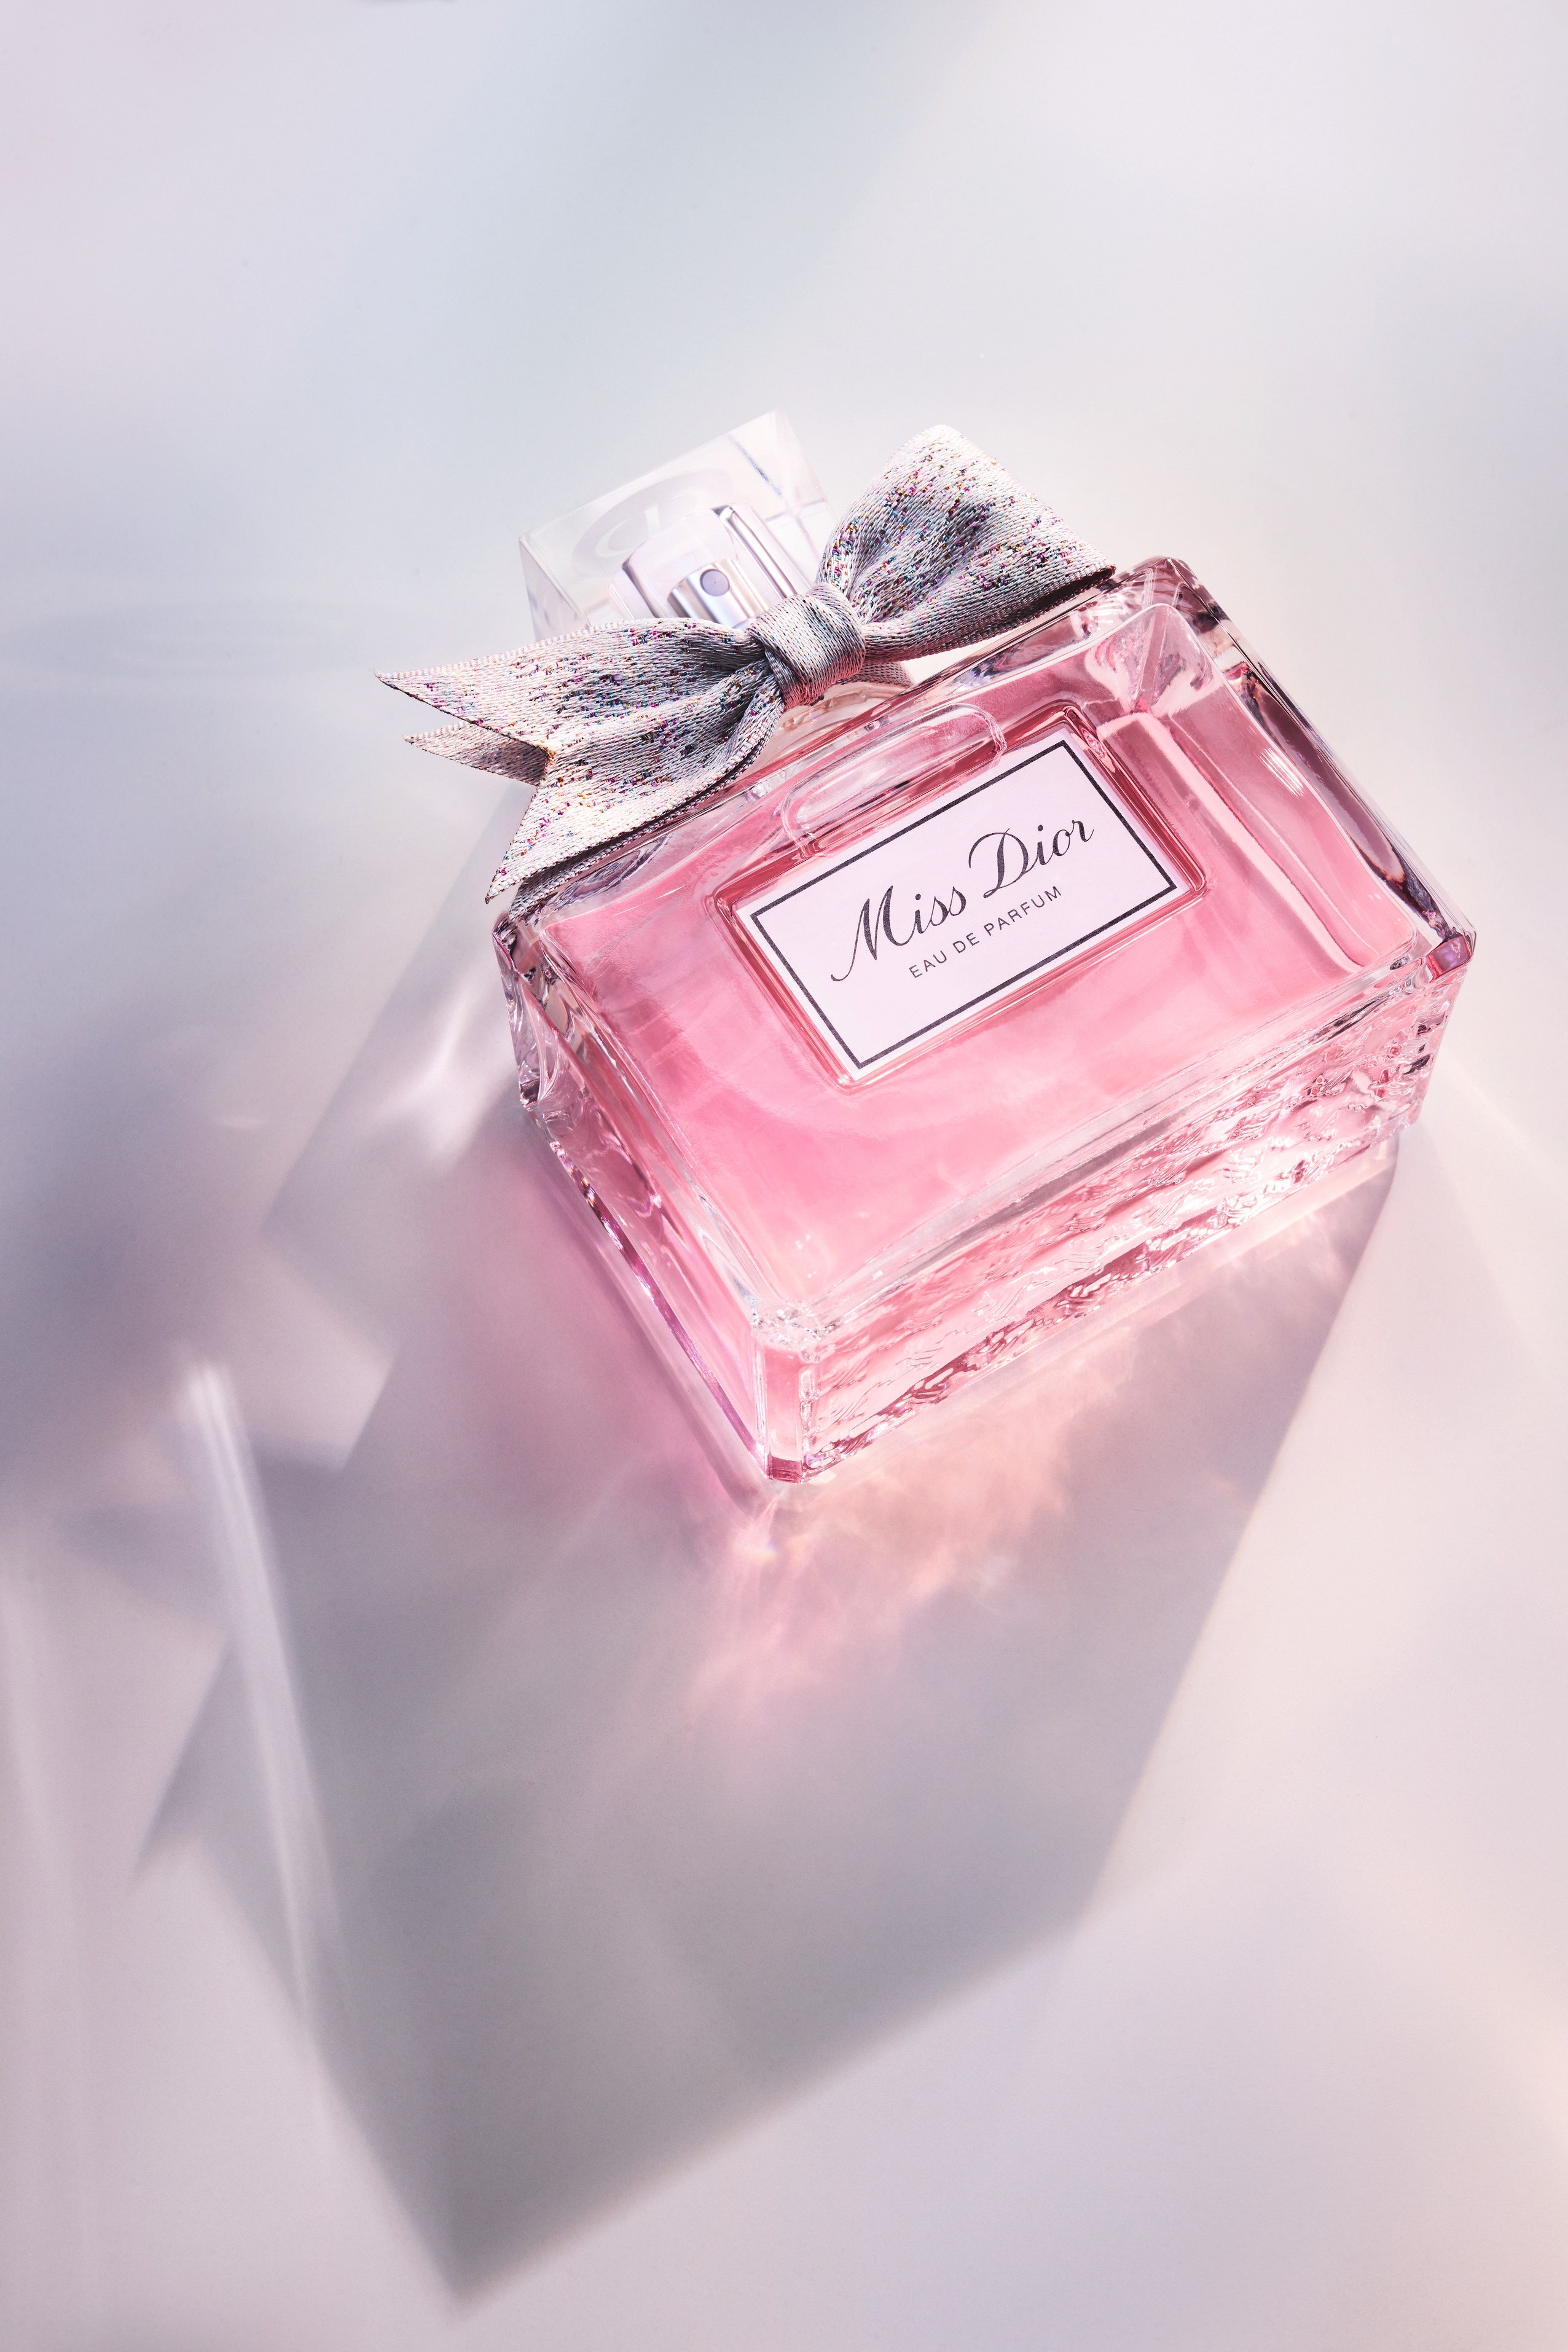 Miss Dior скорее послушайте новый аромат любви